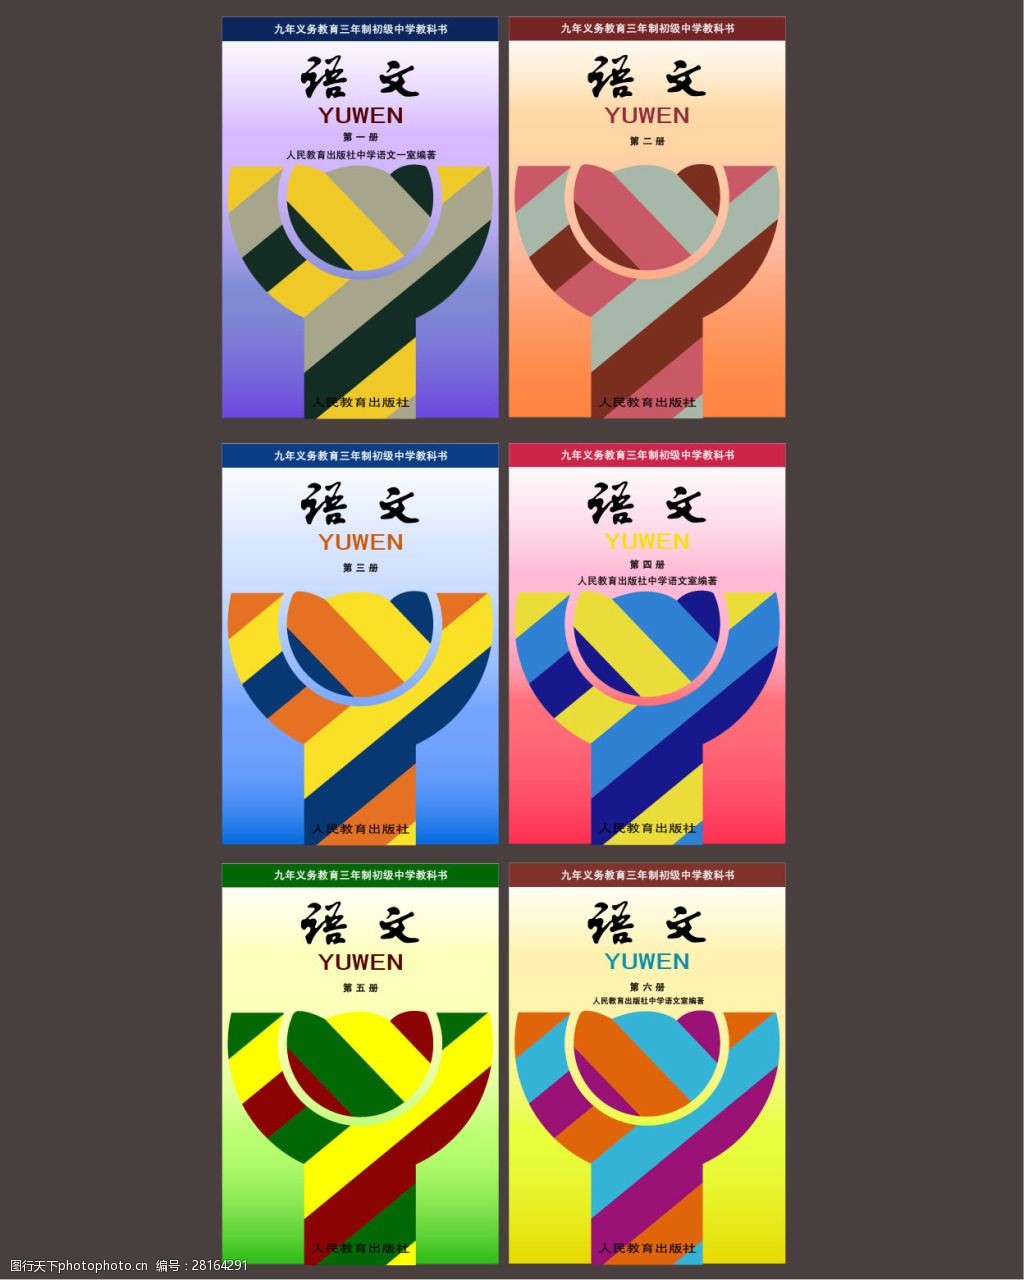 初中语文课本封面